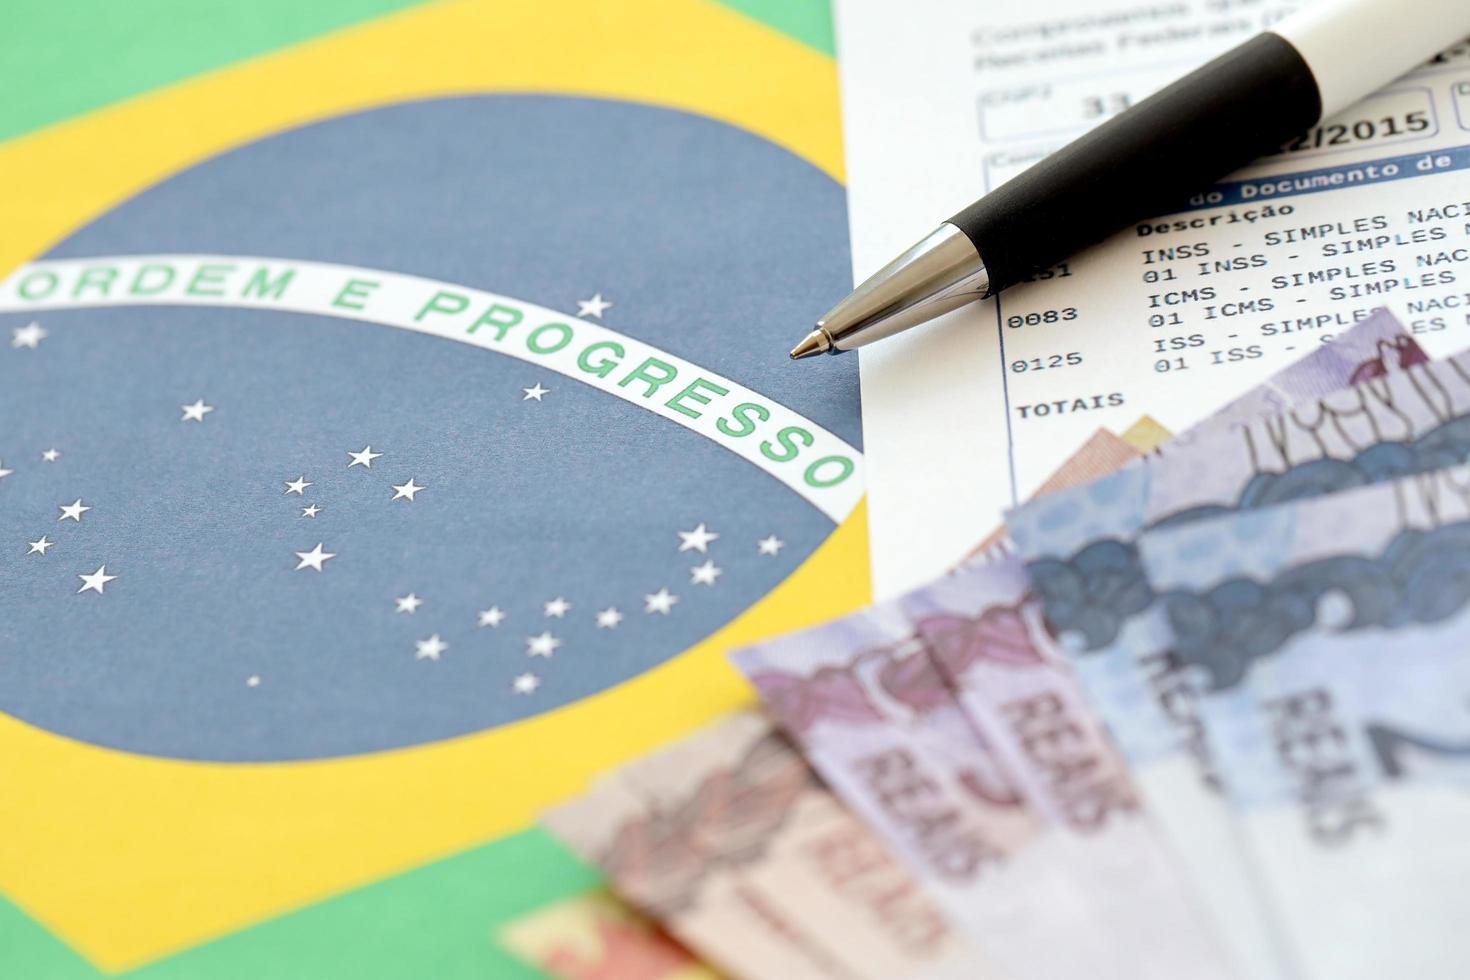 ternopil, ukraine - 20 mai 2022 rapport brésilien de preuve de collecte avec des factures d'argent brésiliennes et un stylo sur fond de drapeau national. paiement légal des impôts brésiliens et déclaration fiscale photo